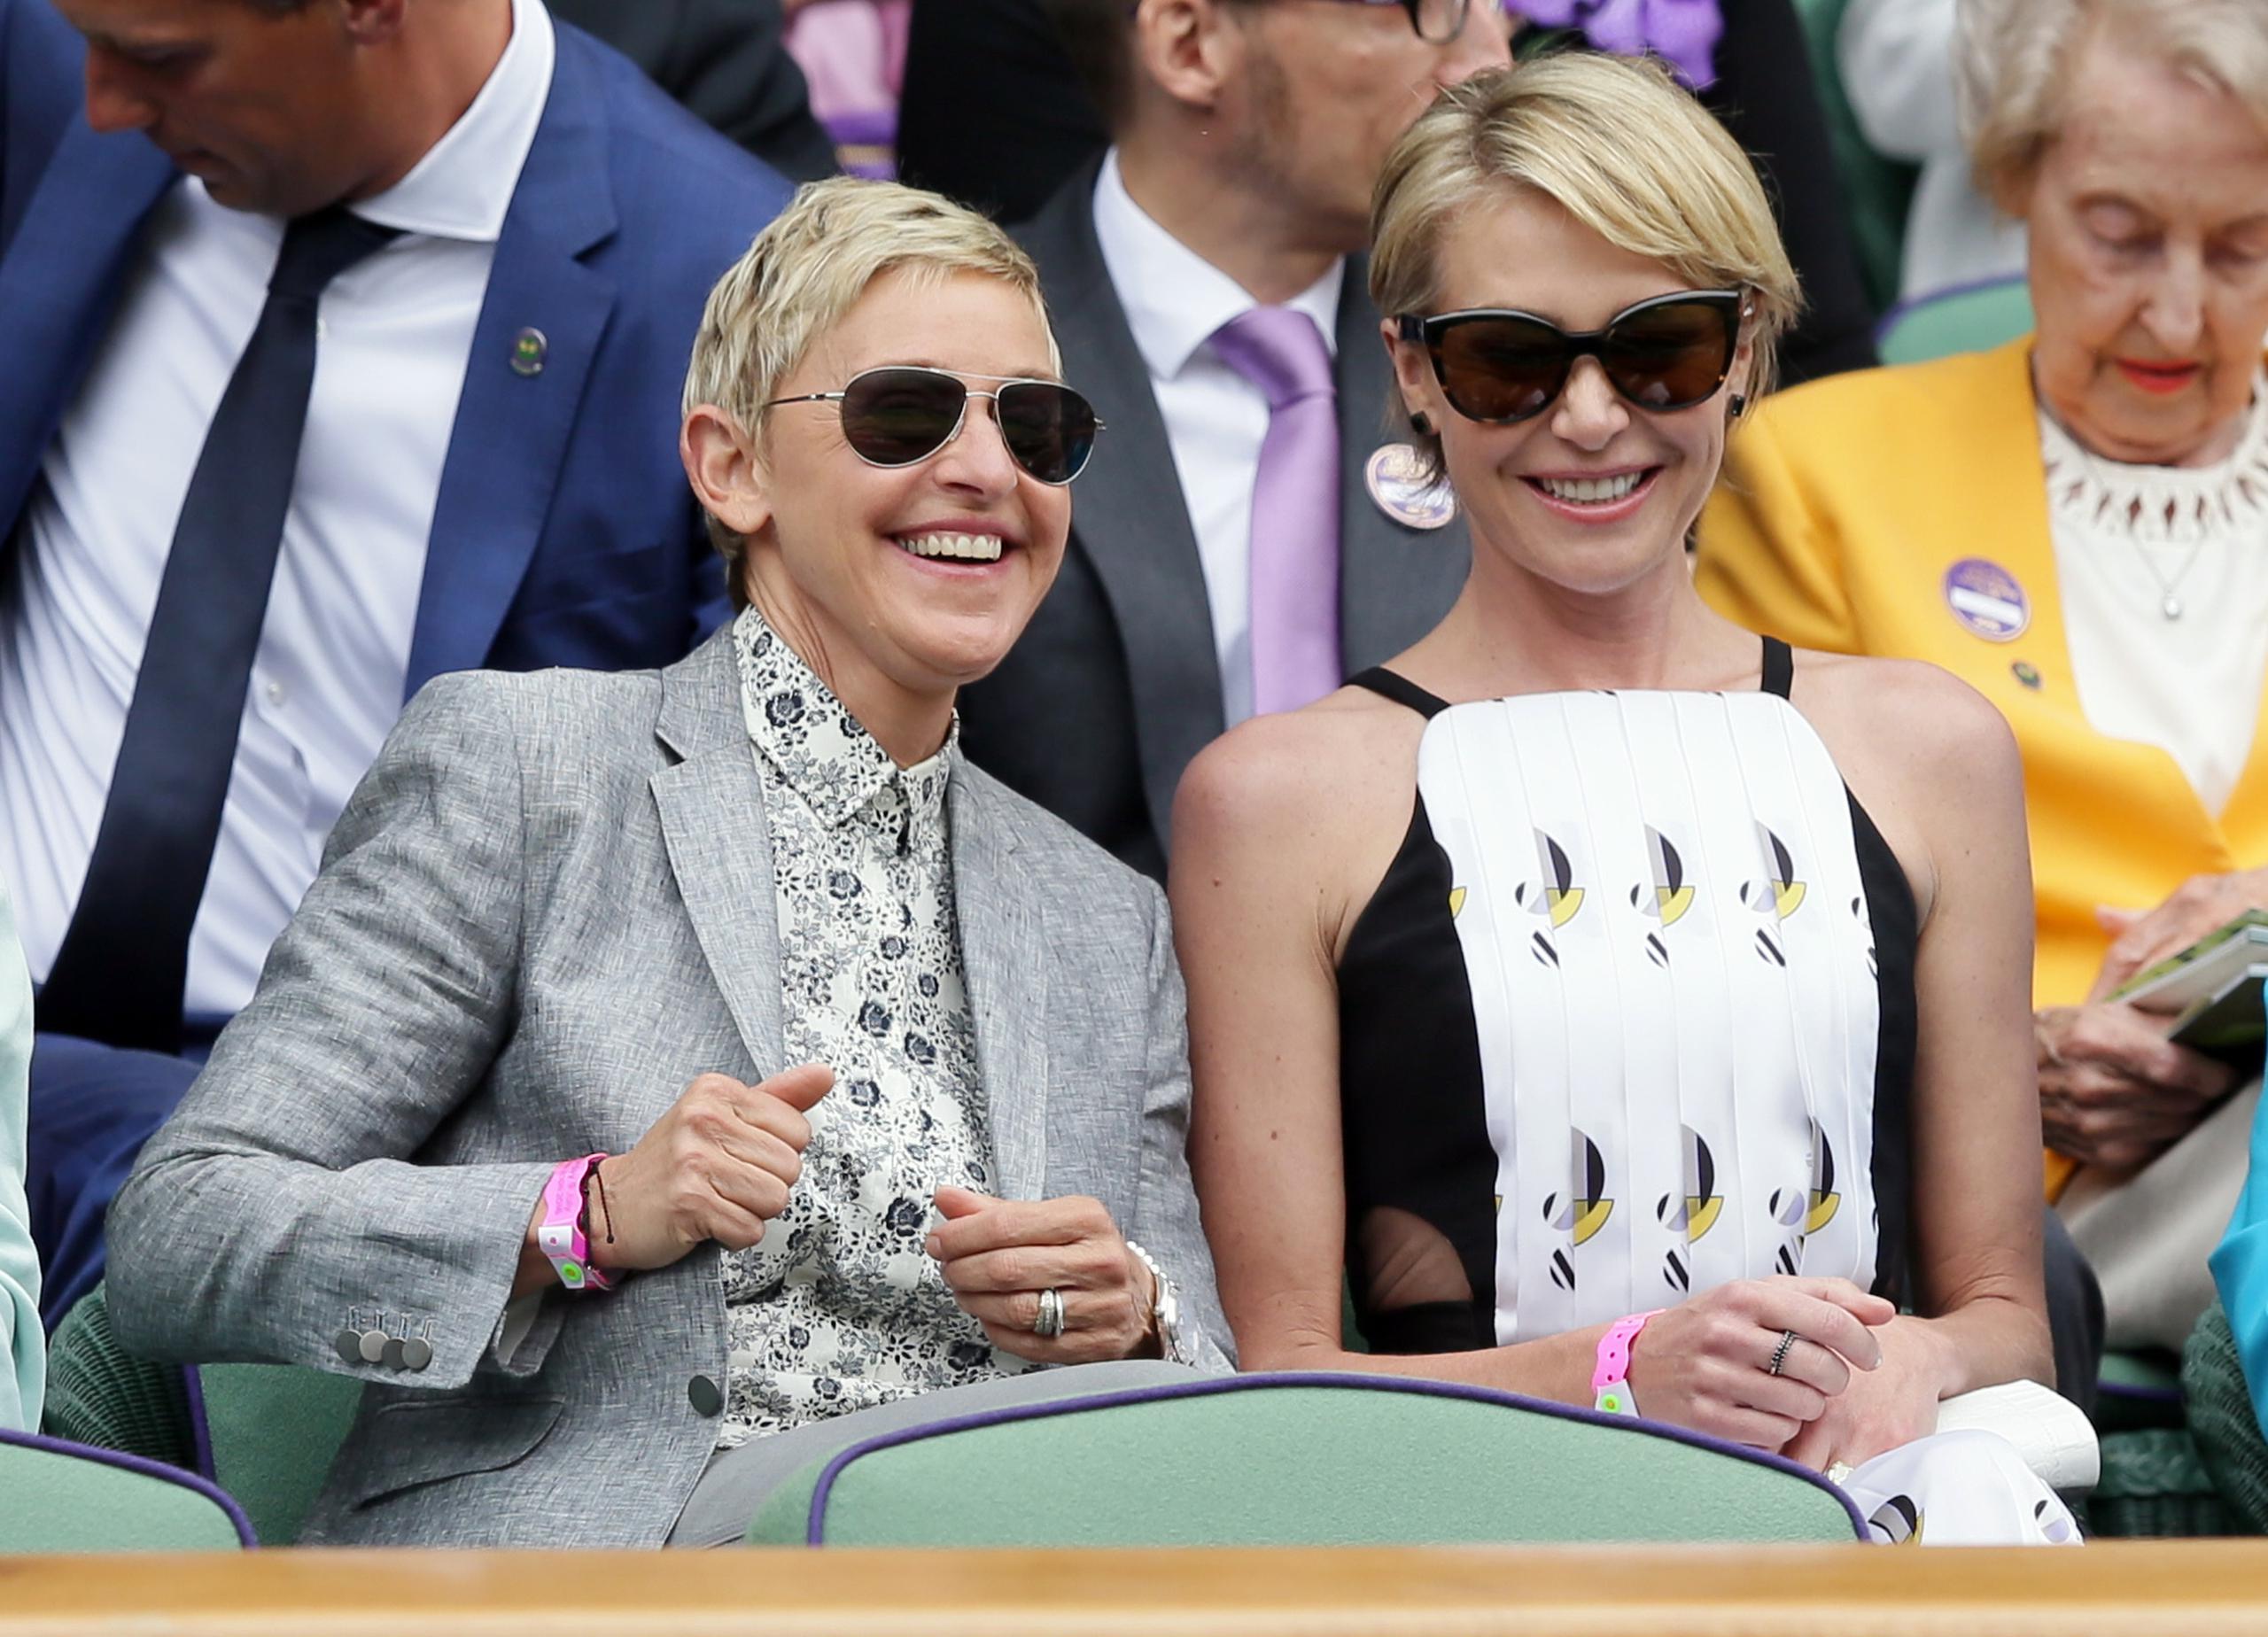 Los vídeos de Ellen DeGeneres de su esposa Portia de Rossi (derecha) aprendiendo a cocinar han sido bien apreciados por sus seguidores.